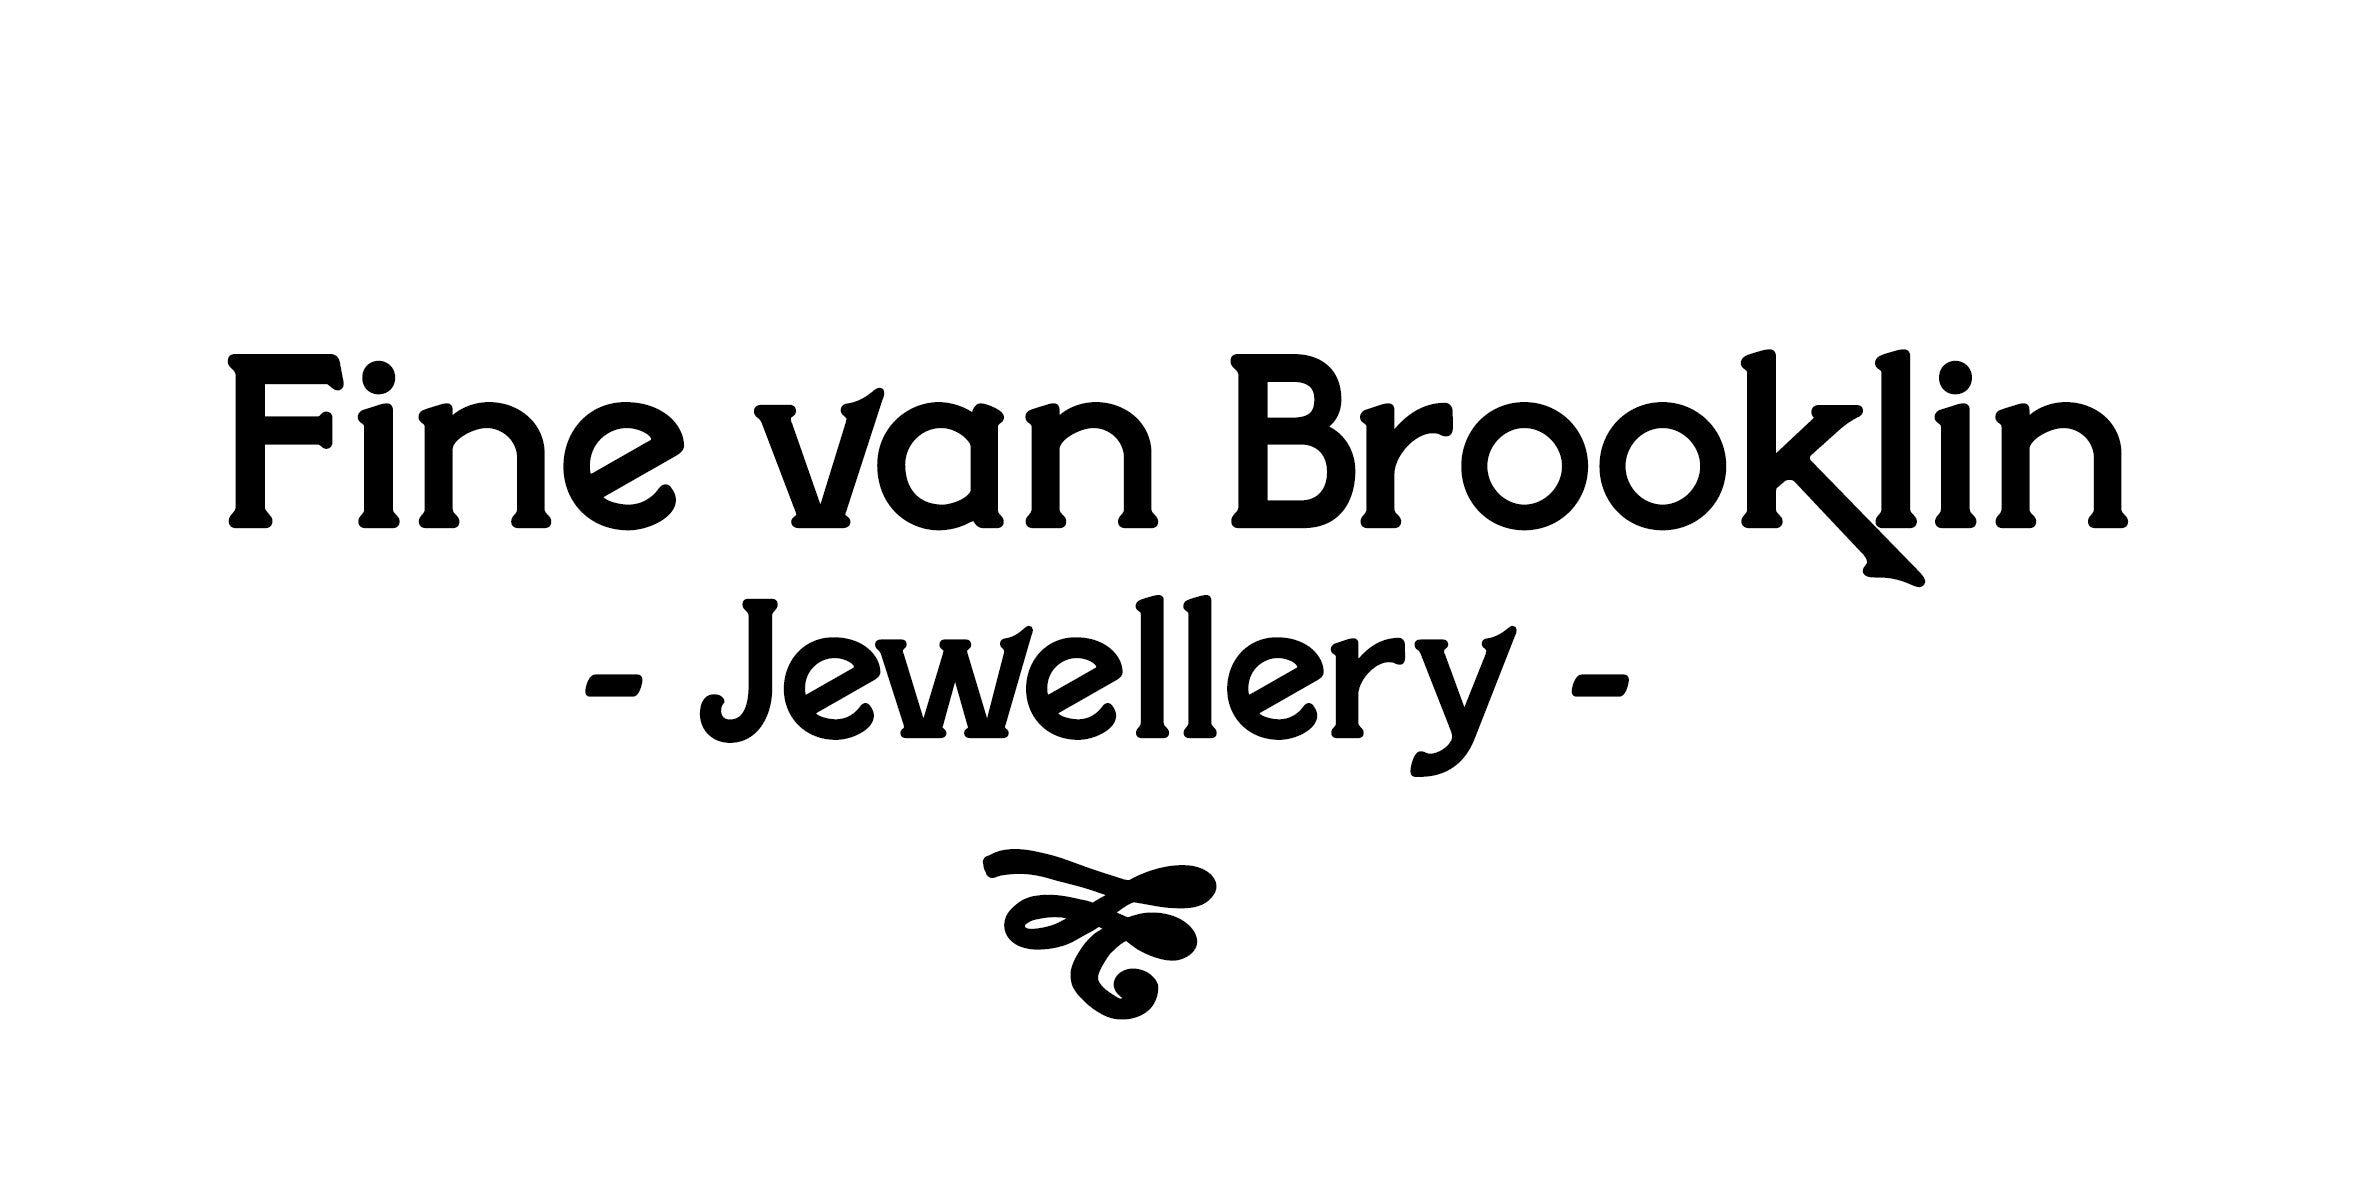 Fine van Brooklin jewellery